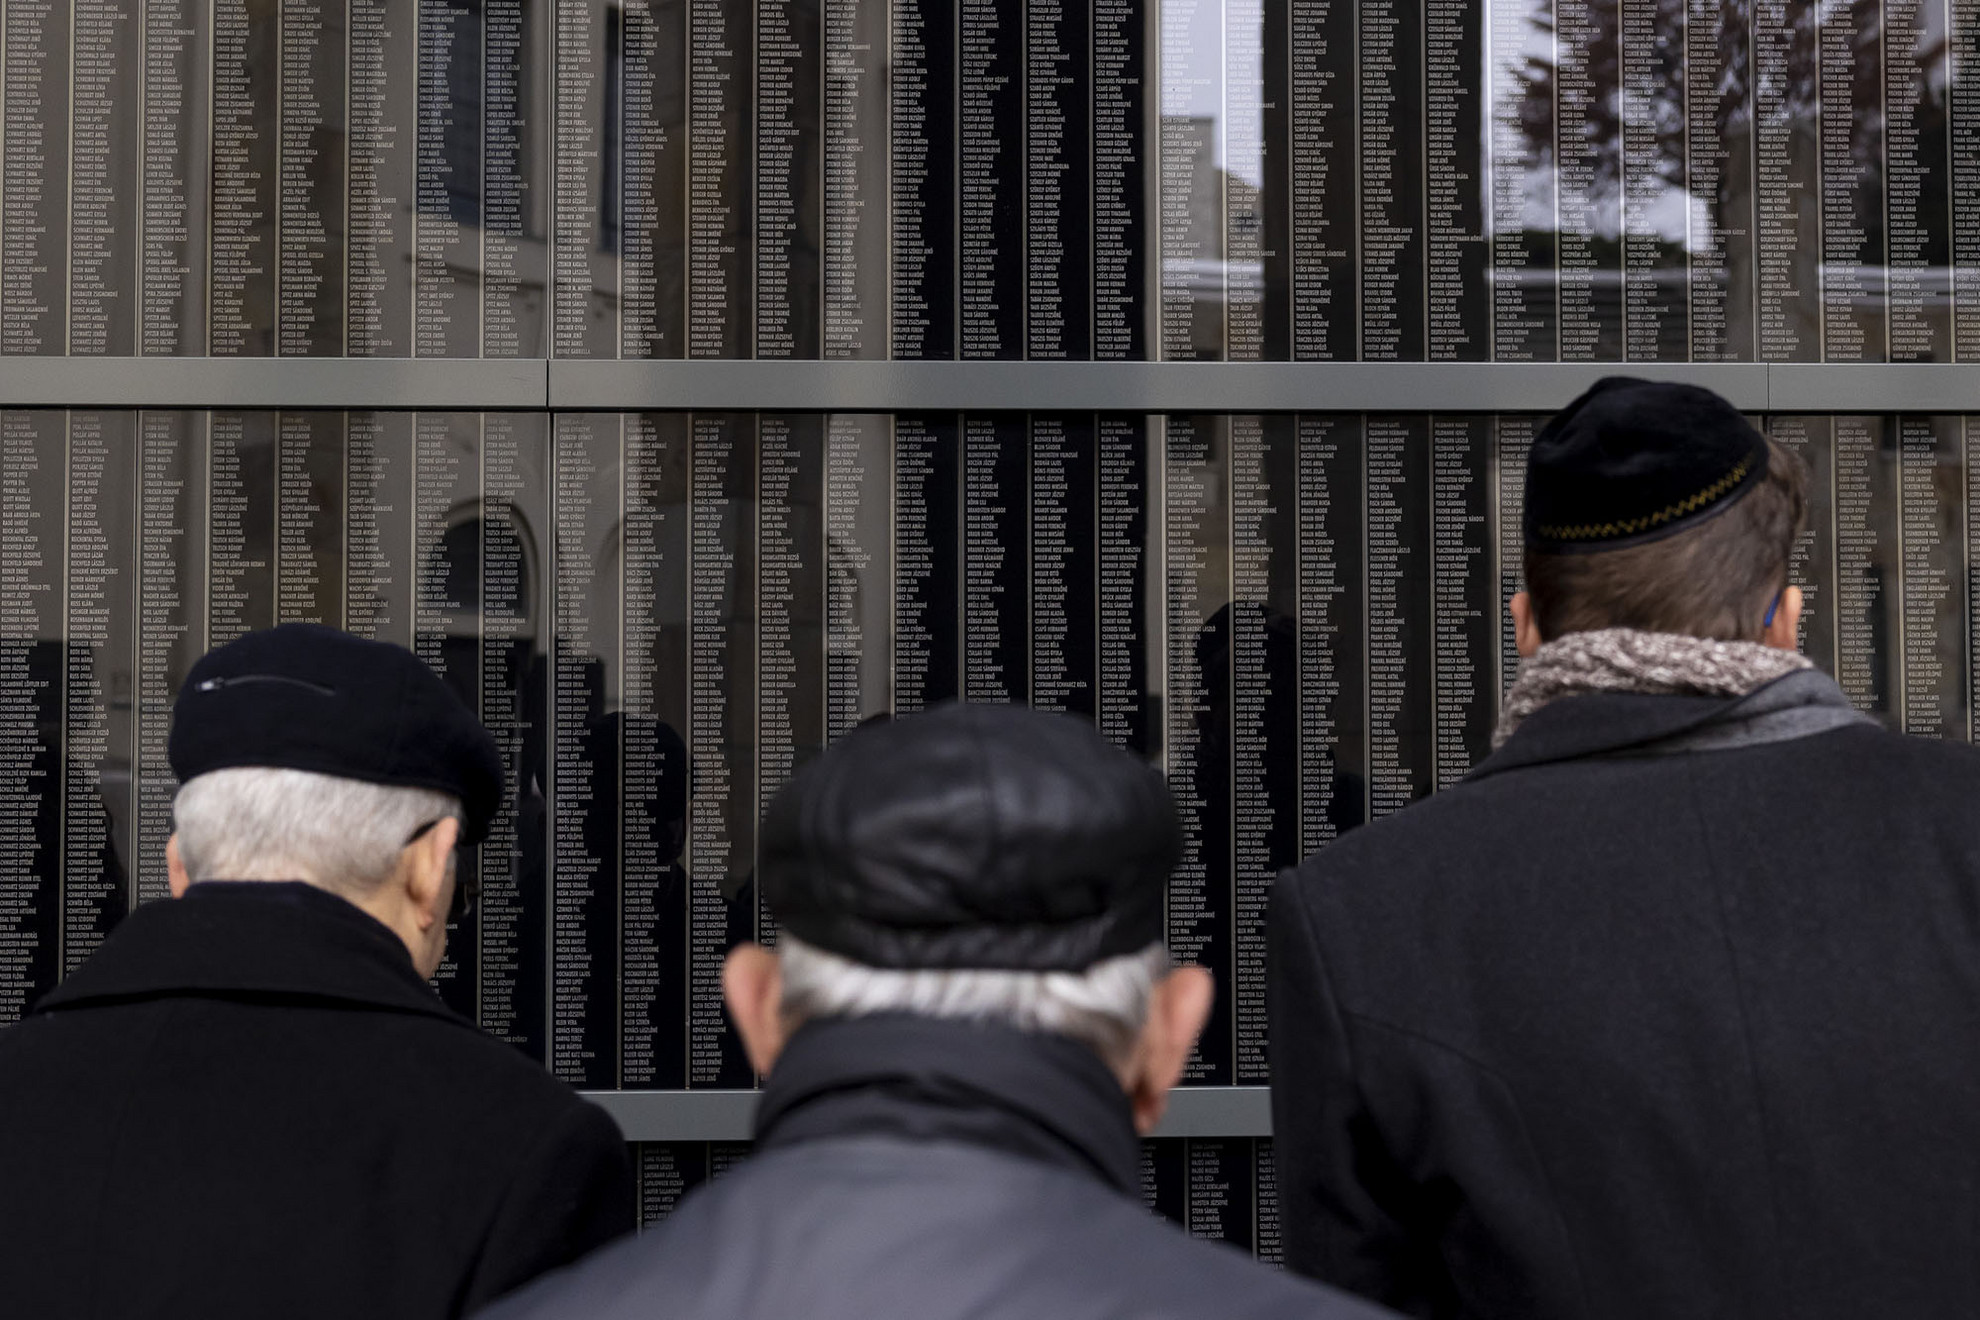 Megemlékezést tartott a holokauszt nemzetközi emléknapja alkalmából a Holocaust Dokumentációs Központ és Emlékgyűjtemény Közalapítvány a Páva utcai zsinagógában.